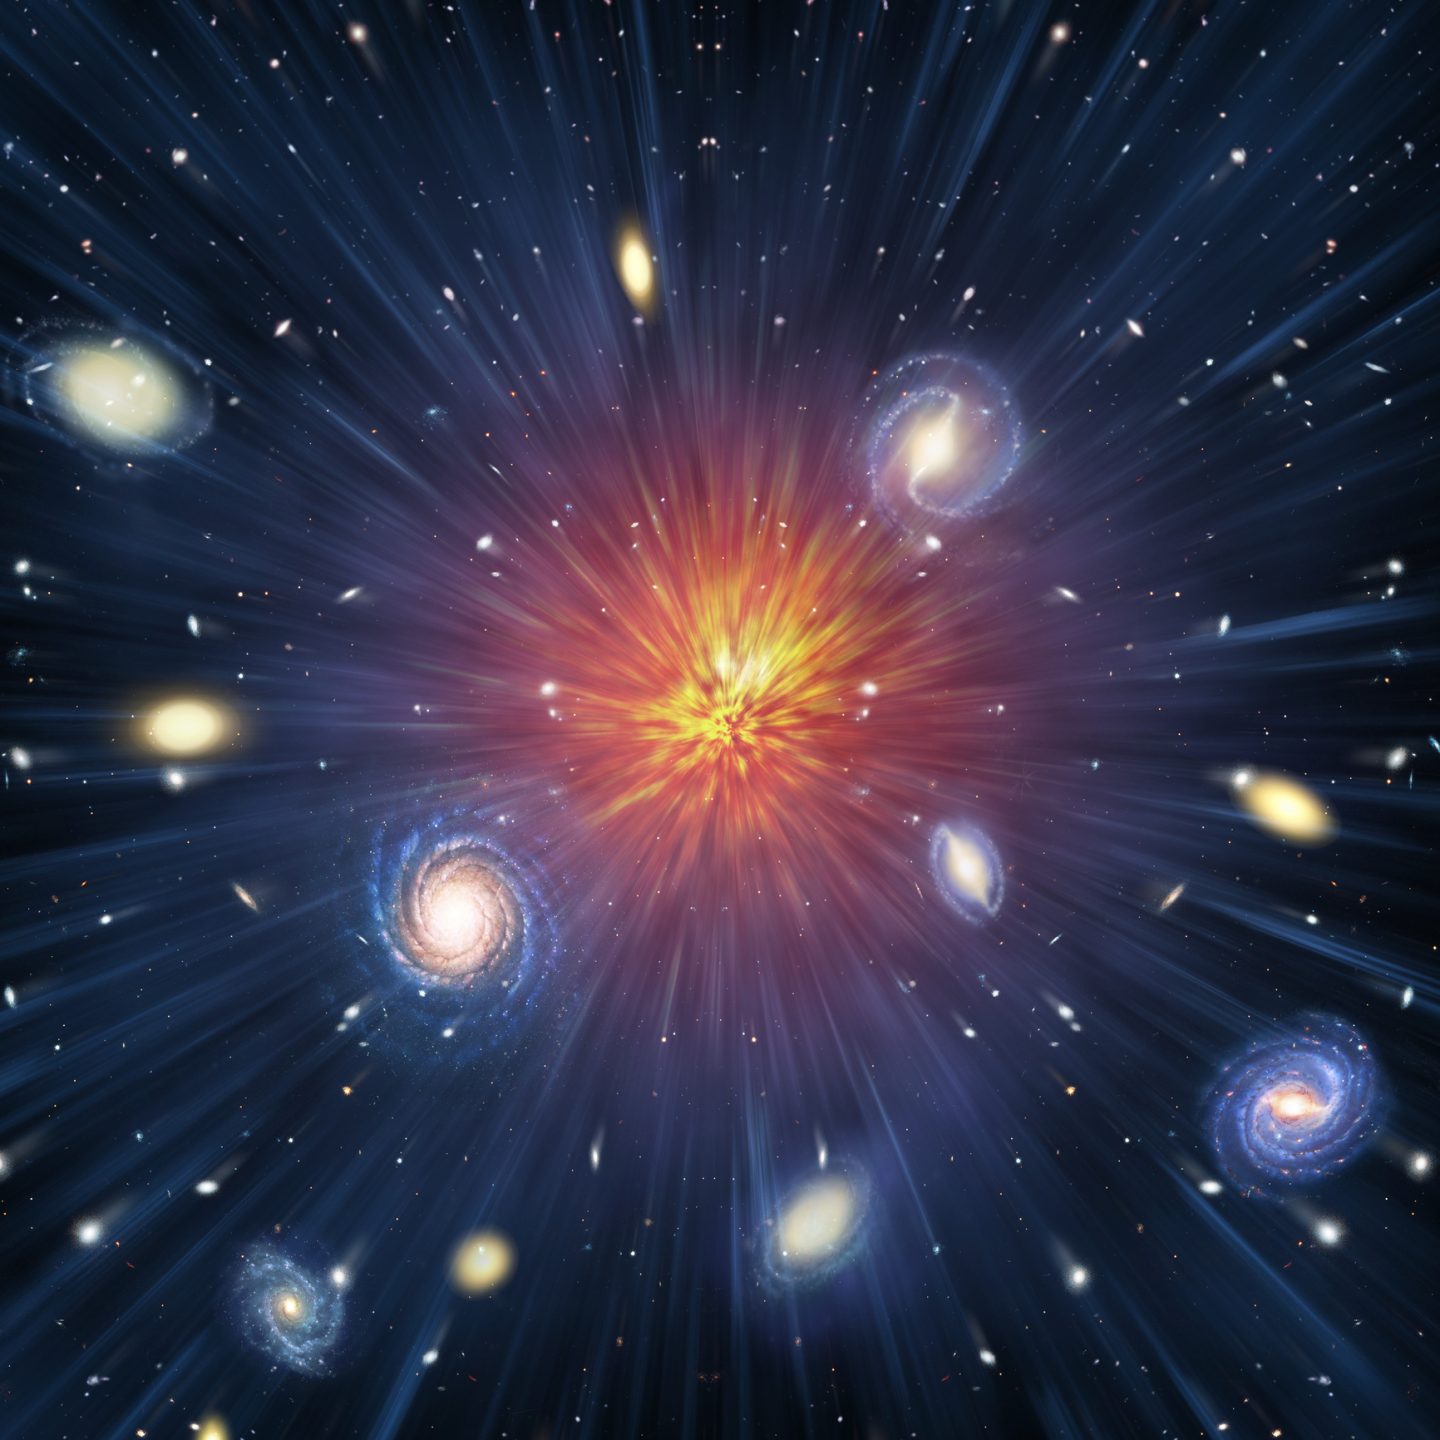 تلسكوب جيمس ويب الفضائي يؤكد معدل تمدد الكون وأحد أكبر الألغاز الفيزيائية